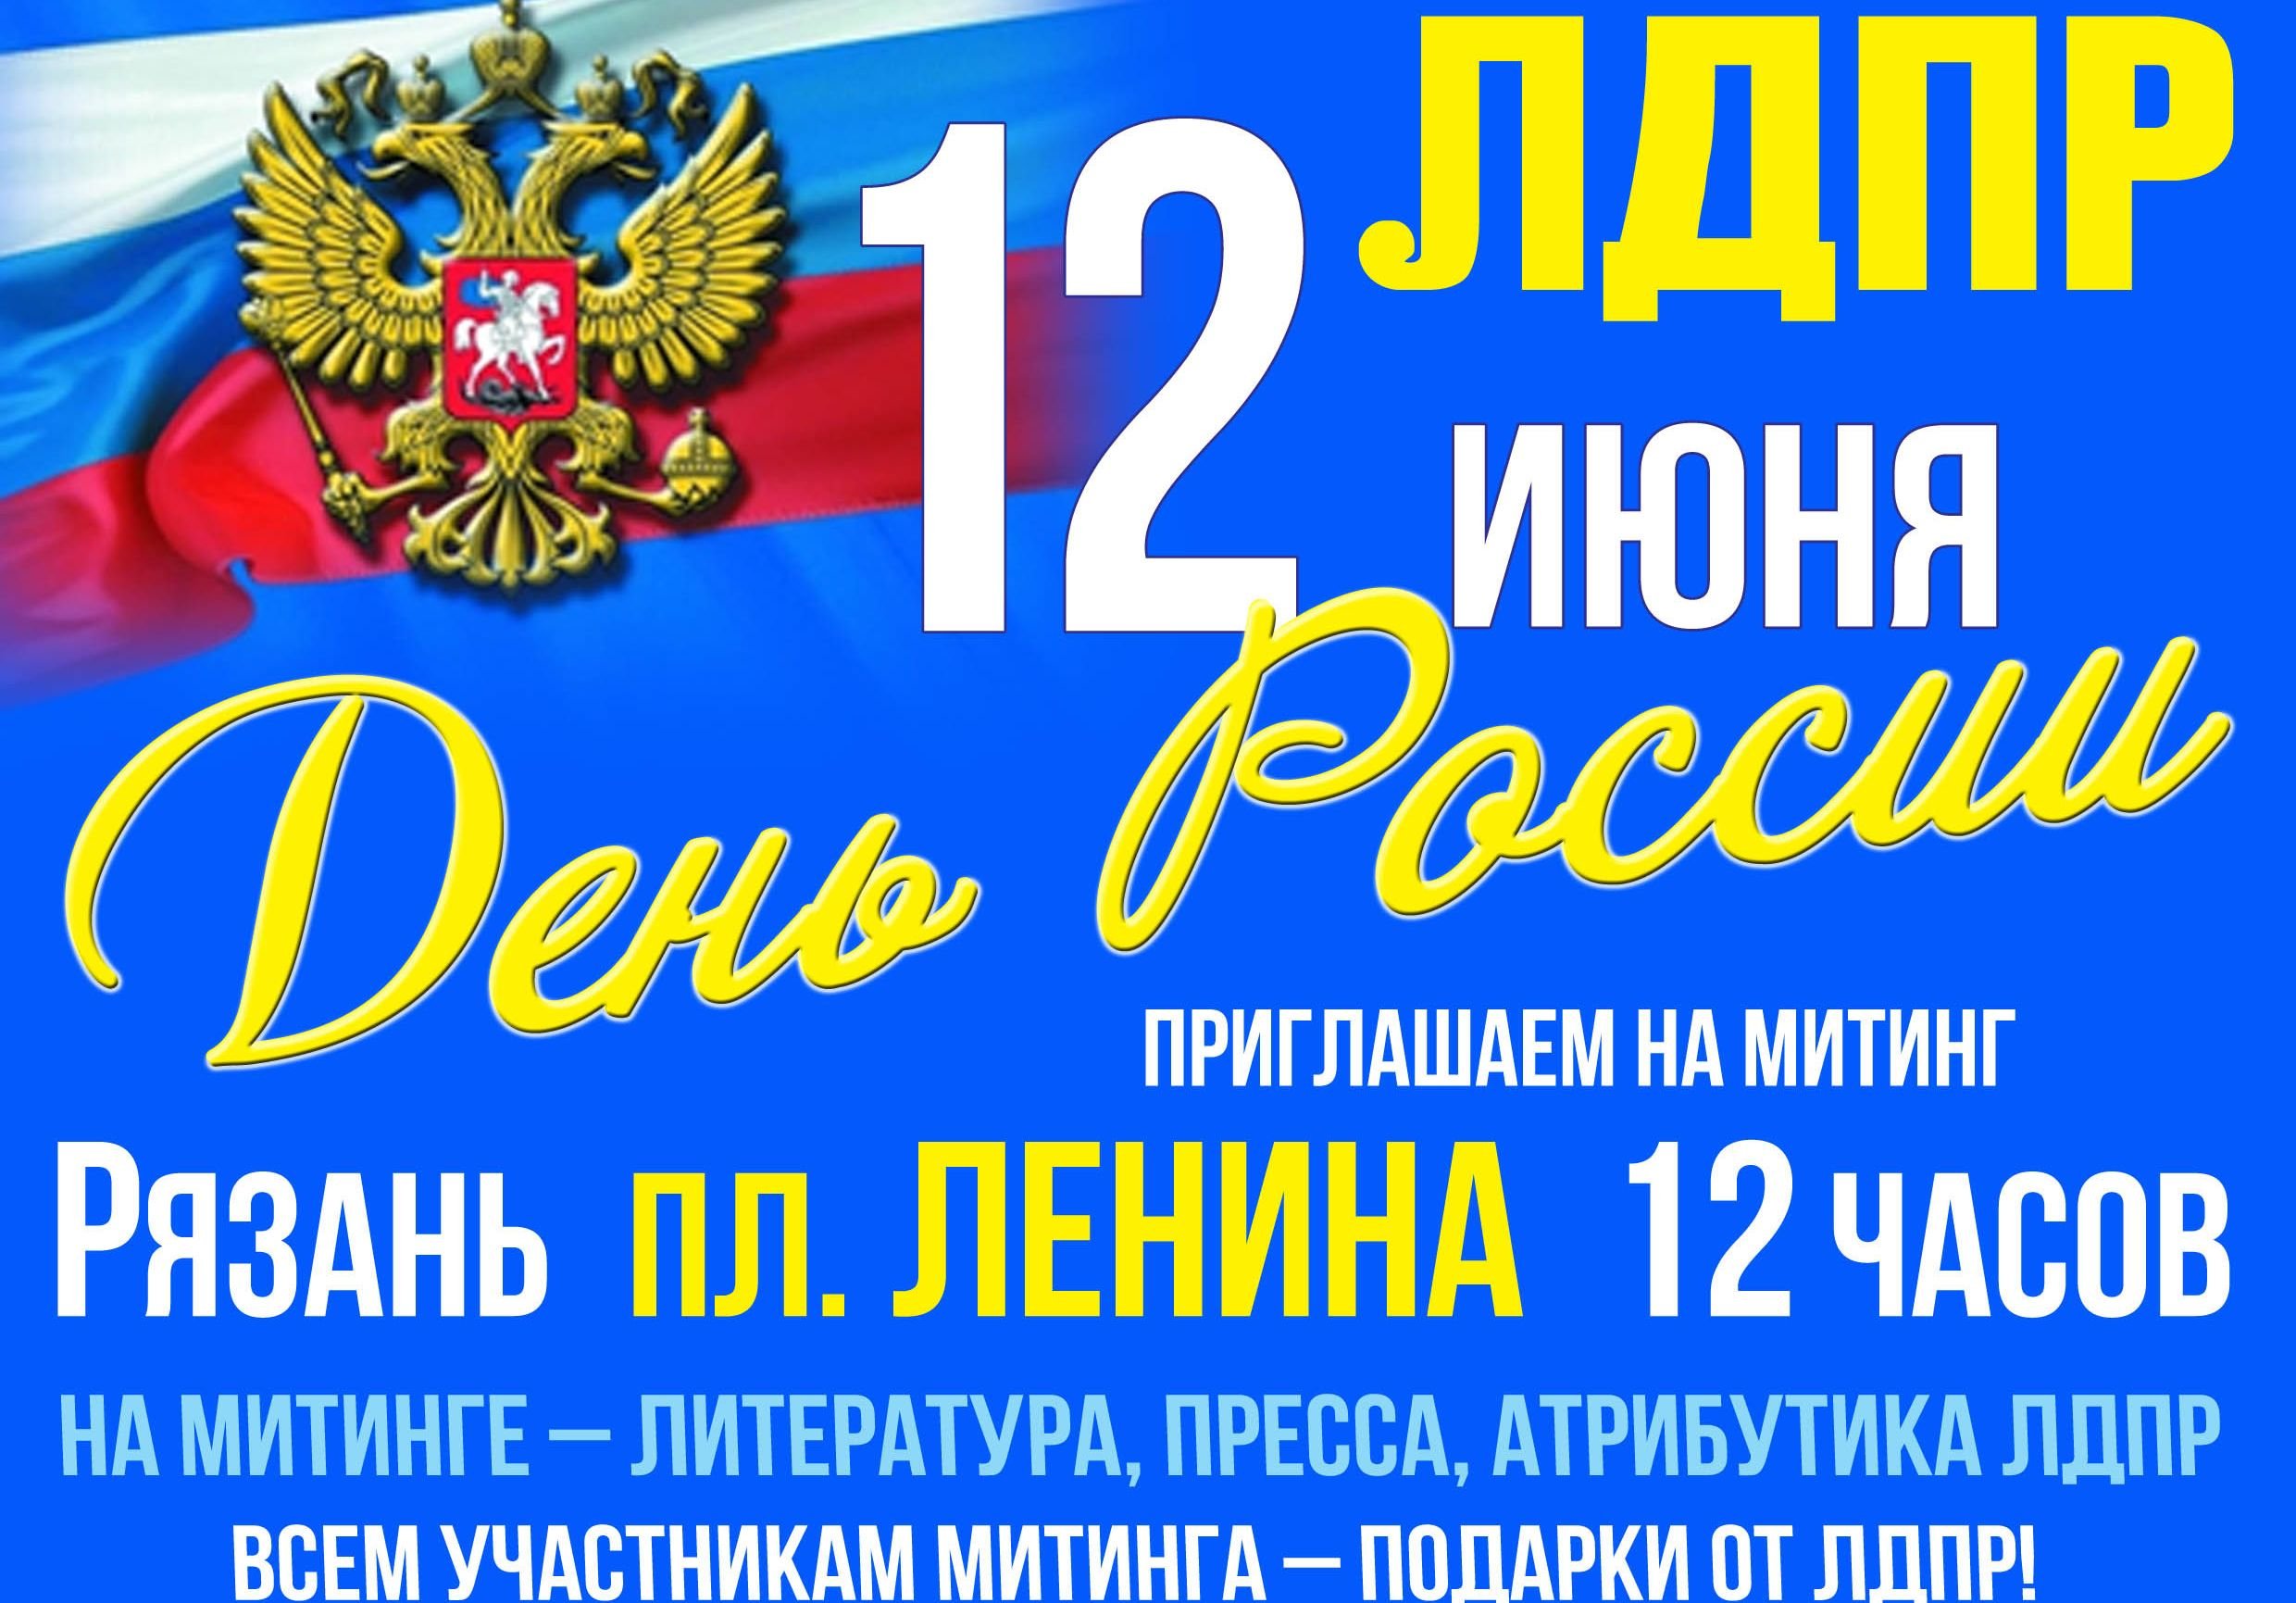 В День России ЛДПР проведет митинг на площади Ленина